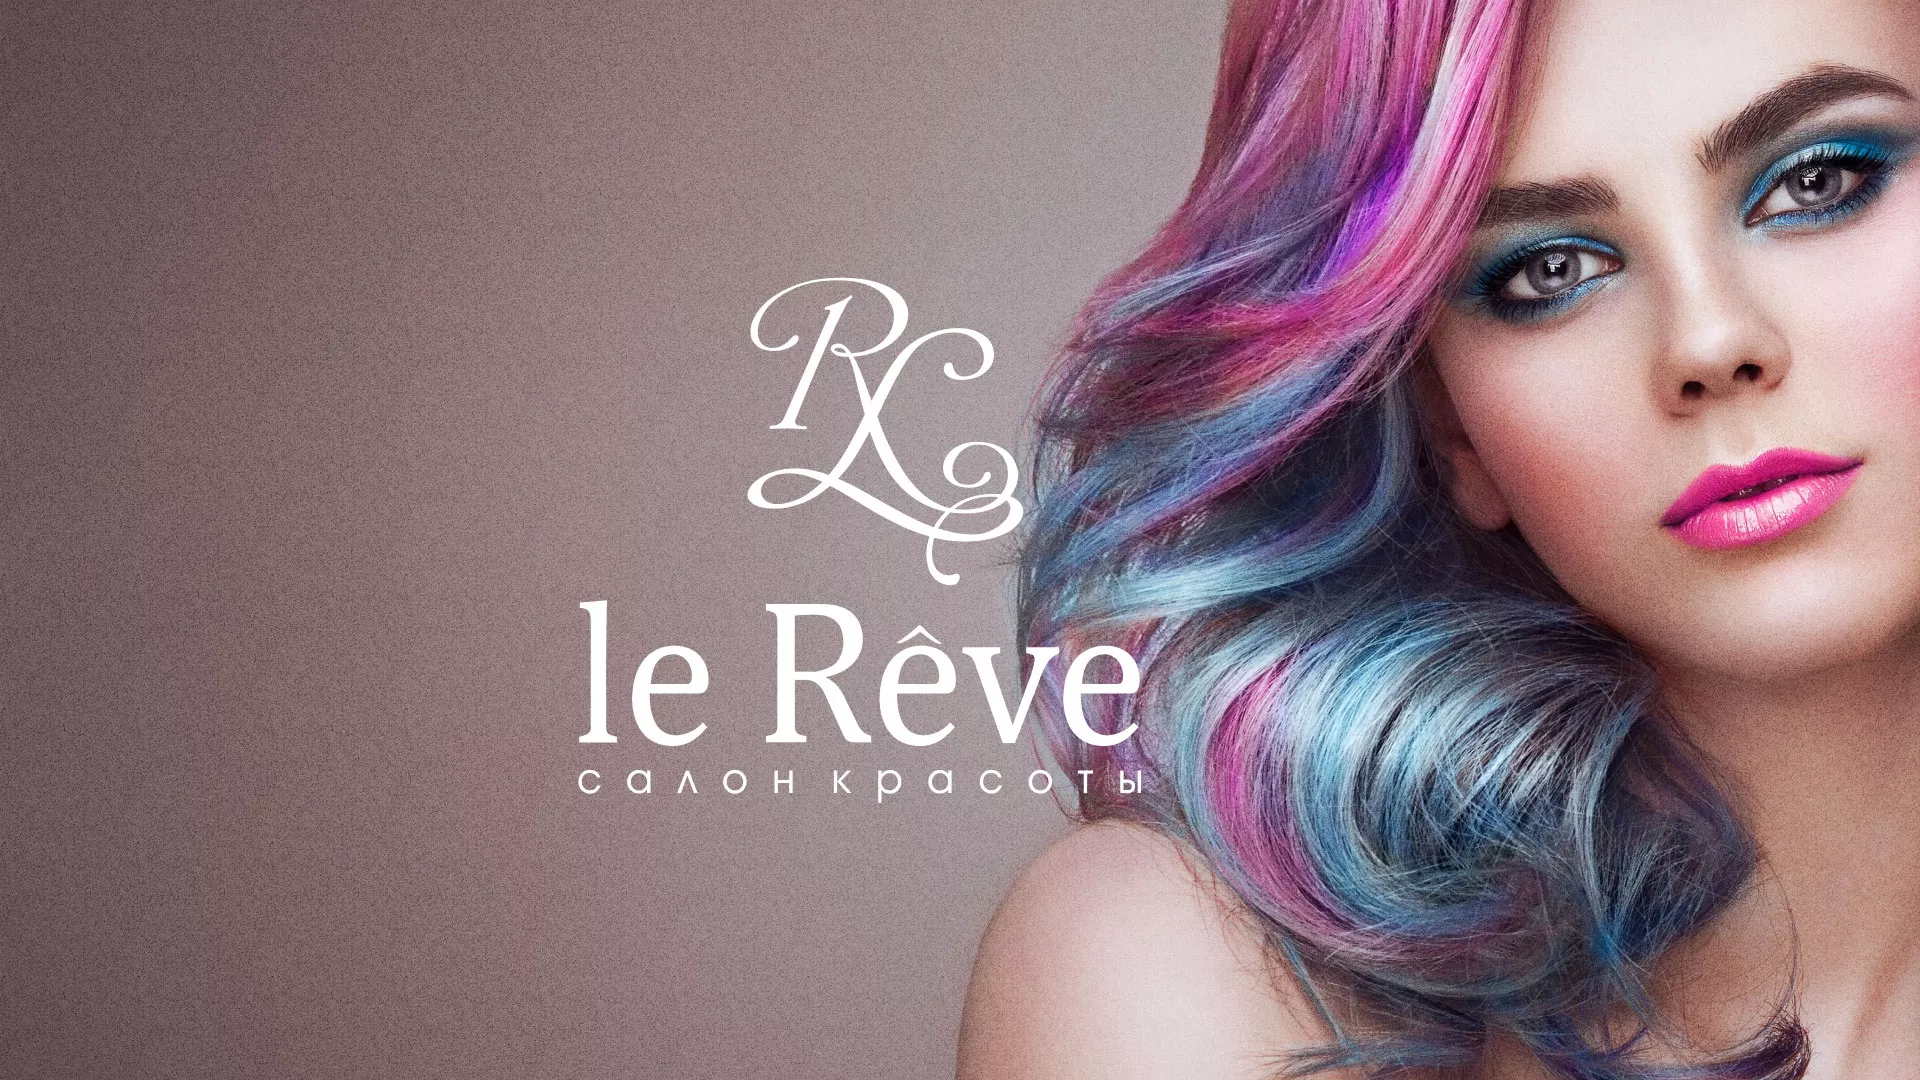 Создание сайта для салона красоты «Le Reve» в Волгограде